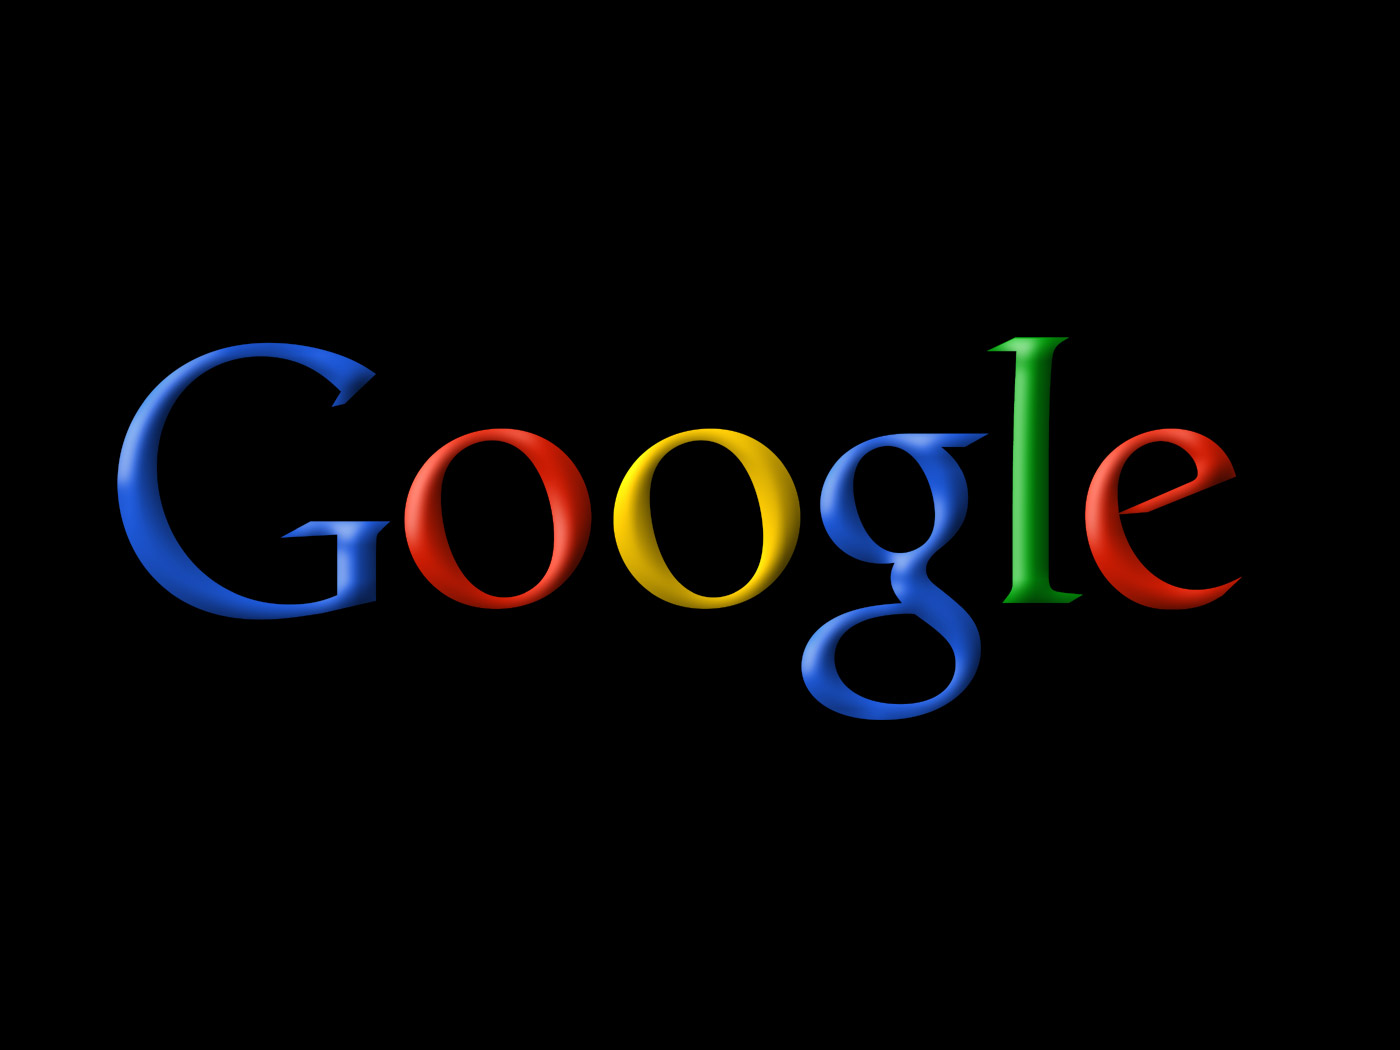 गूगल का नया अपडेट, अब पहले से आसान होगा सर्च करना